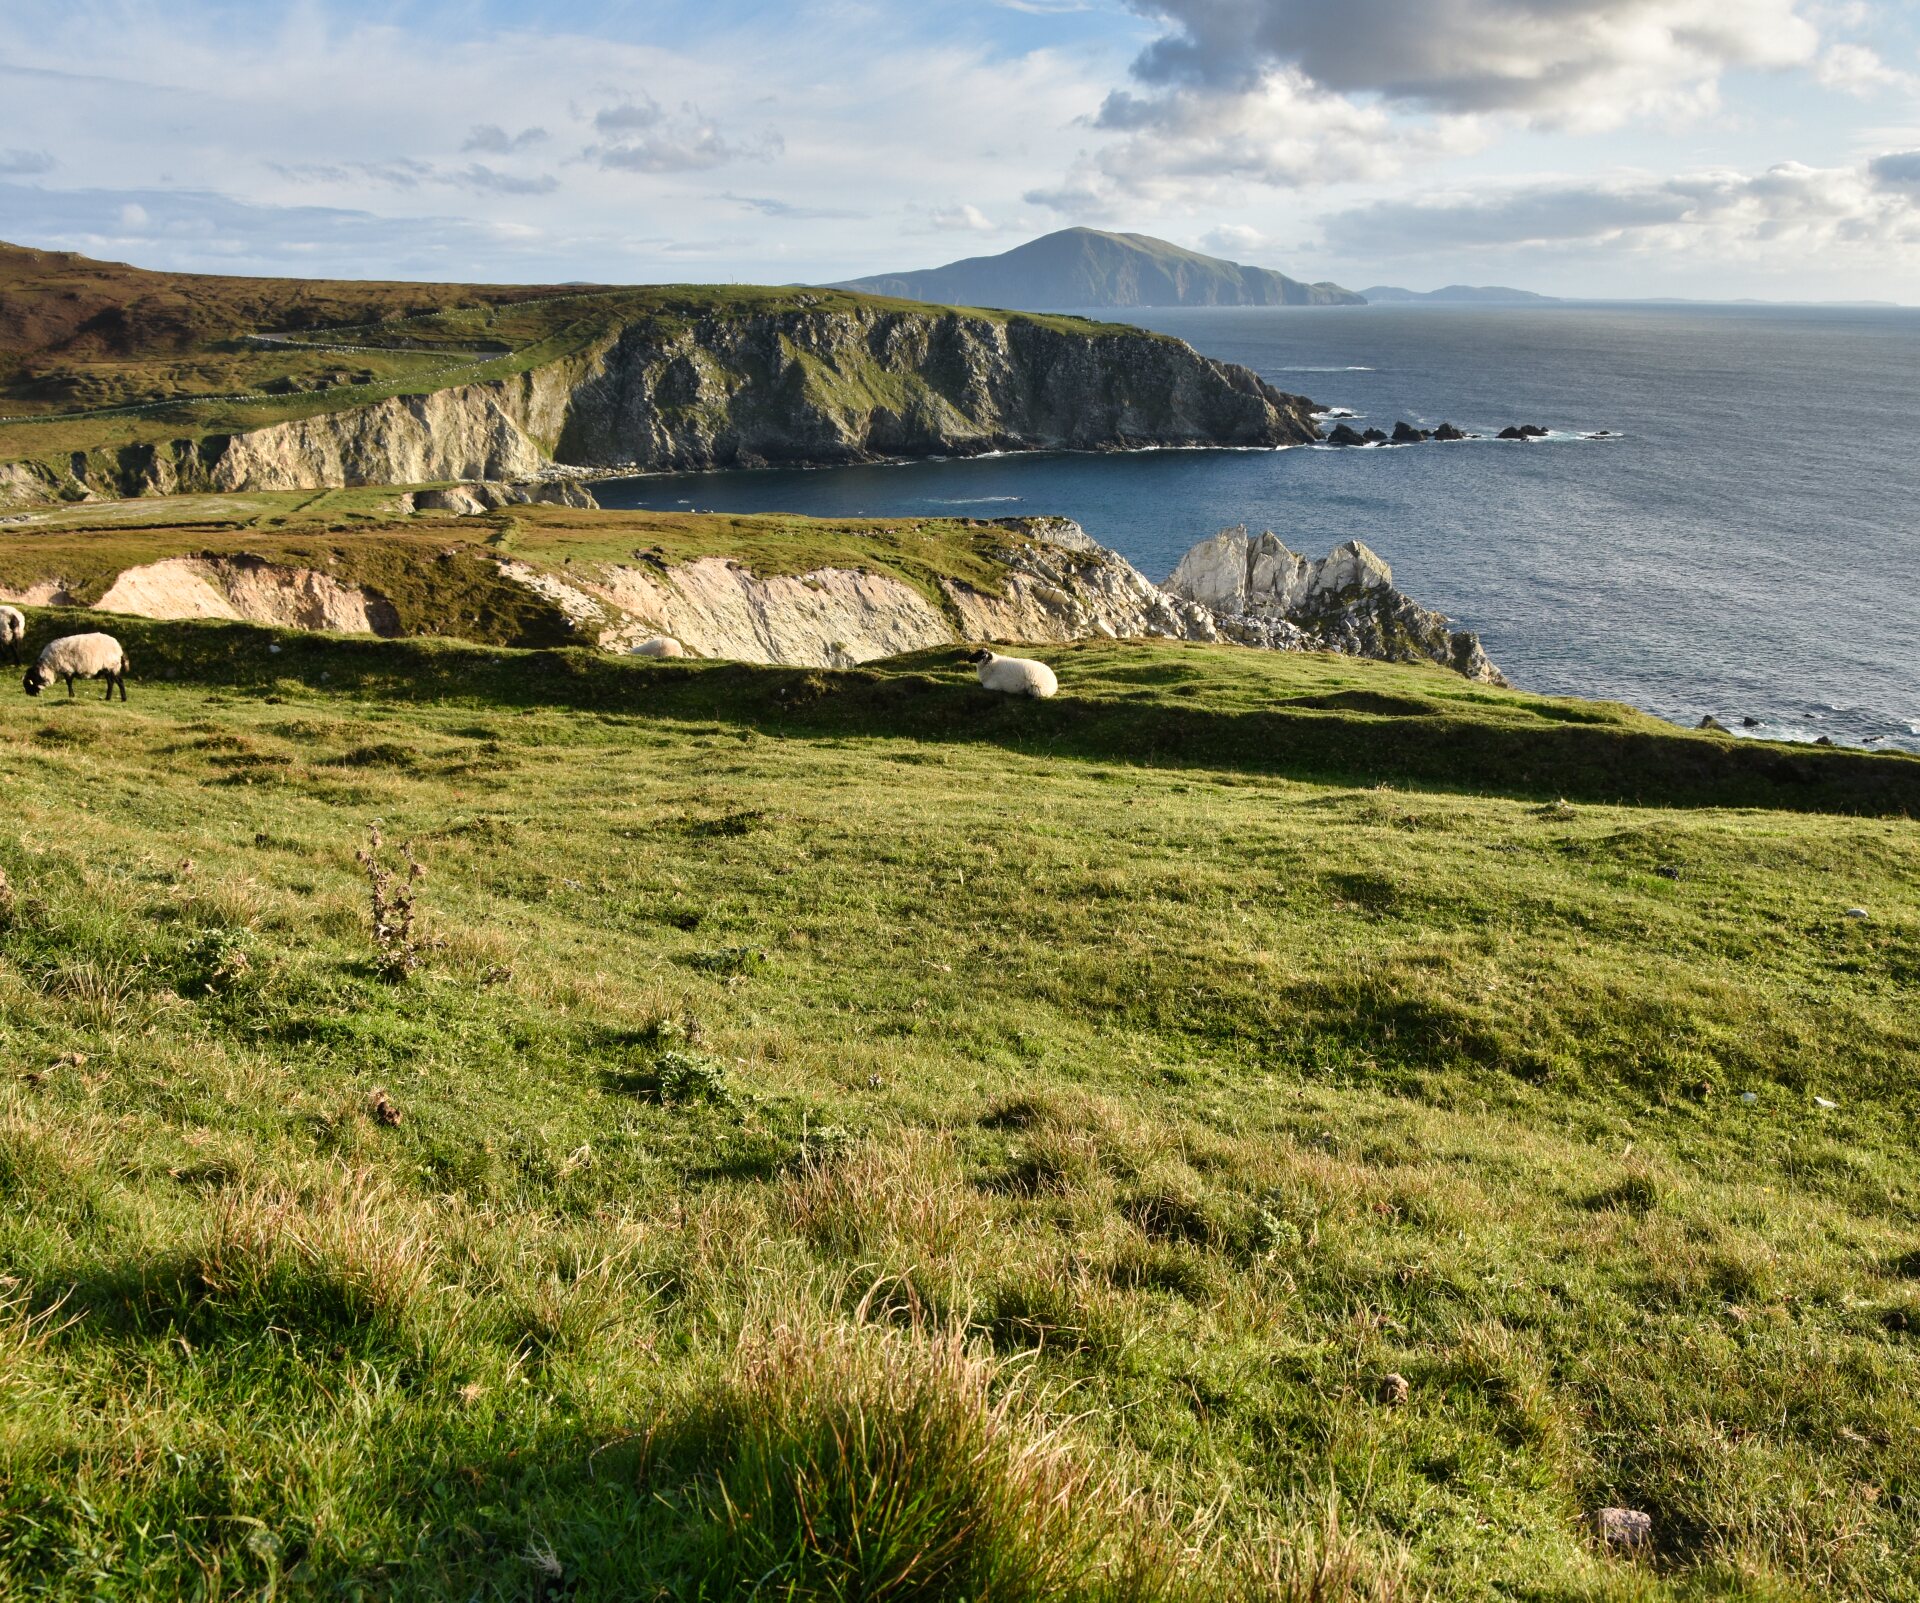 Im Hintergrund blaues Meer und die Steilküste Irlands. Davor liegt eine grüne Wiese, auf der Schafe weiden.